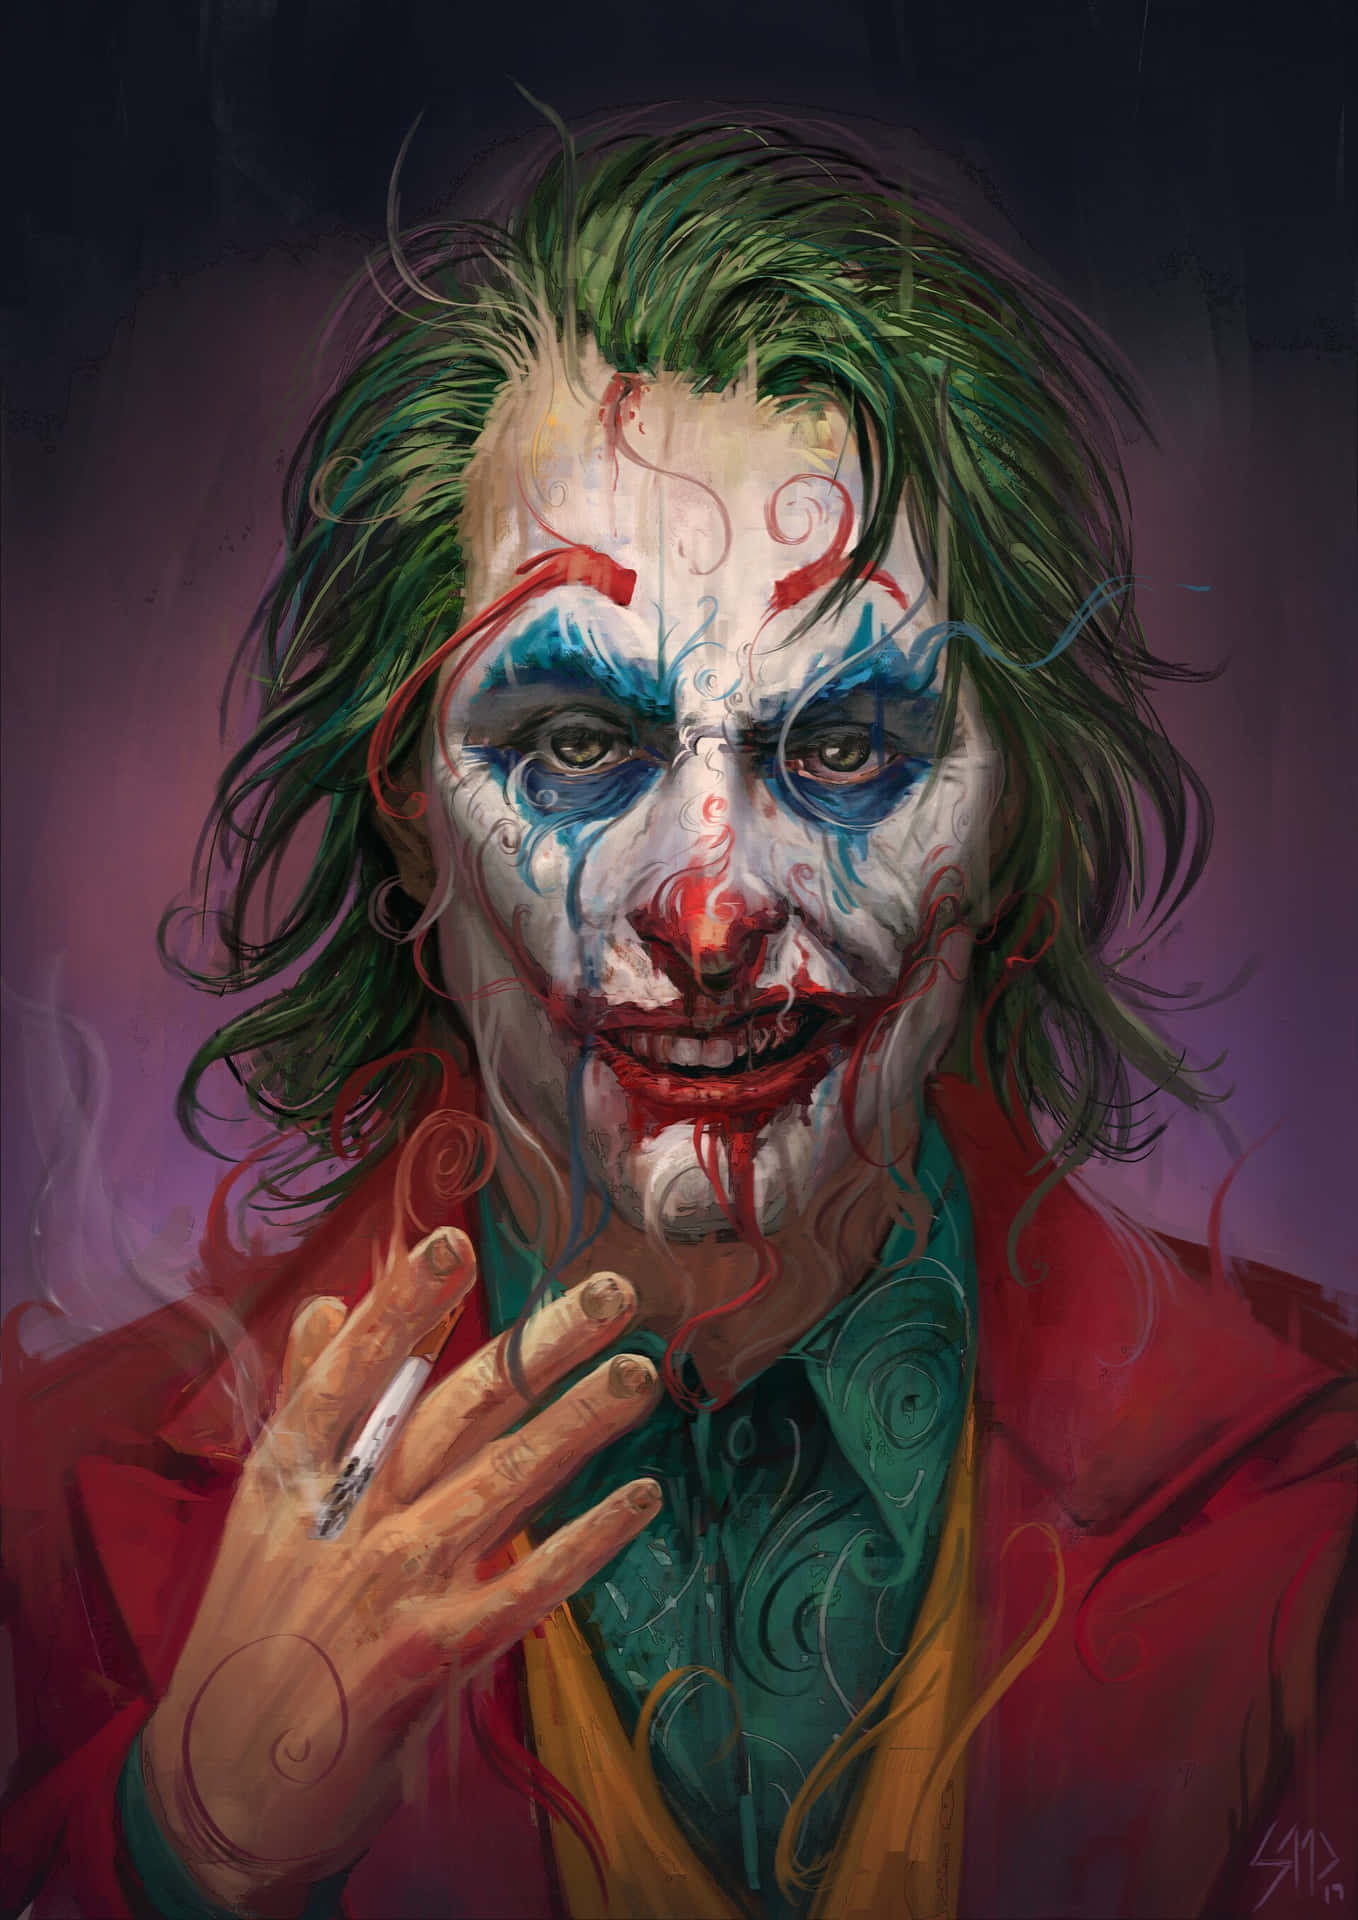 Et fjendtligt og ikonisk udseende, Joker Mask wallpaper er perfekt til den dristige i dig.